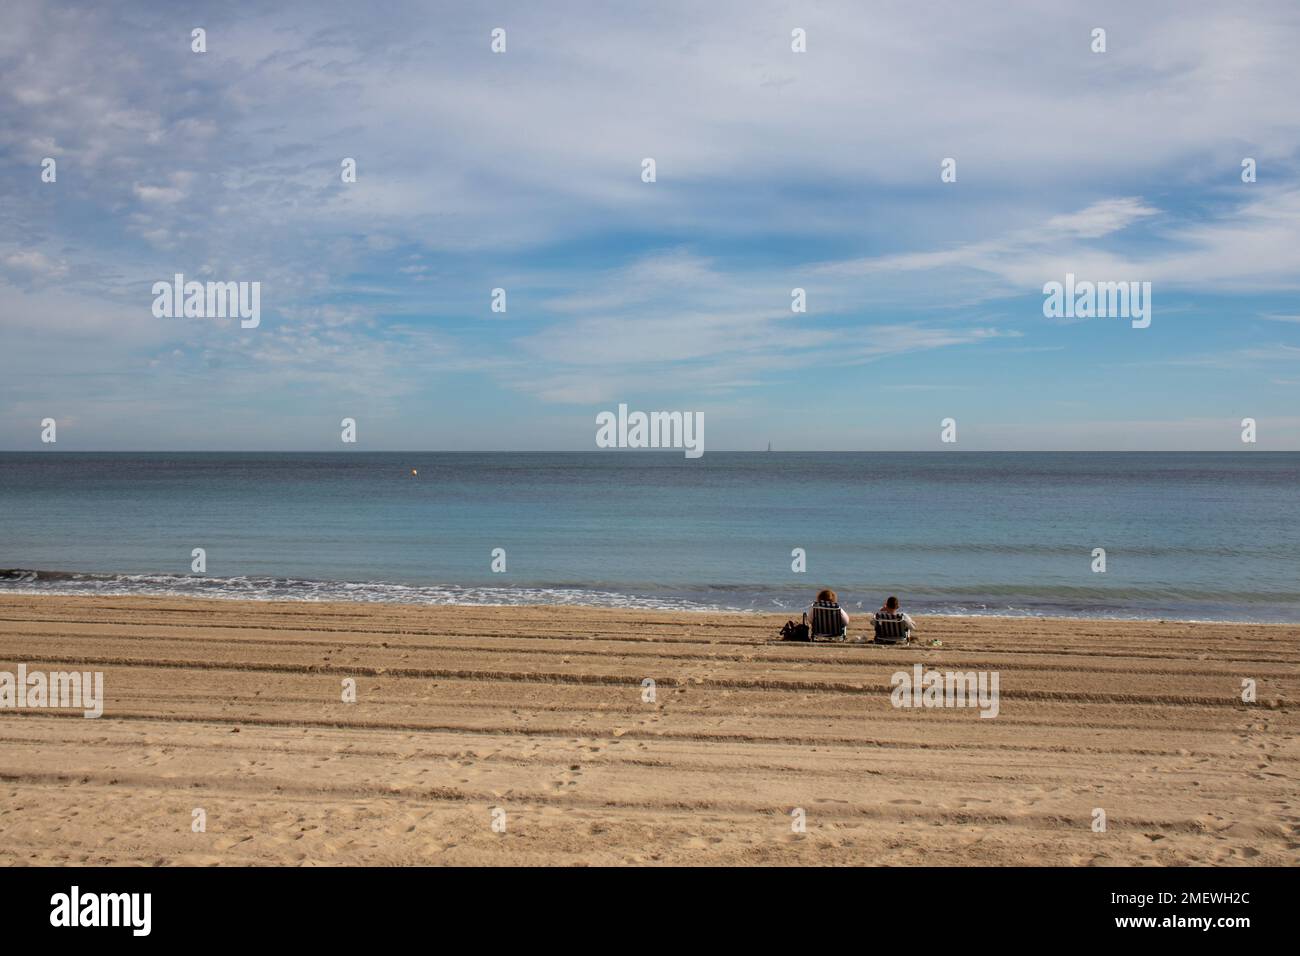 Pareja sentada en una playa frente al mar en invierno, España Stock Photo